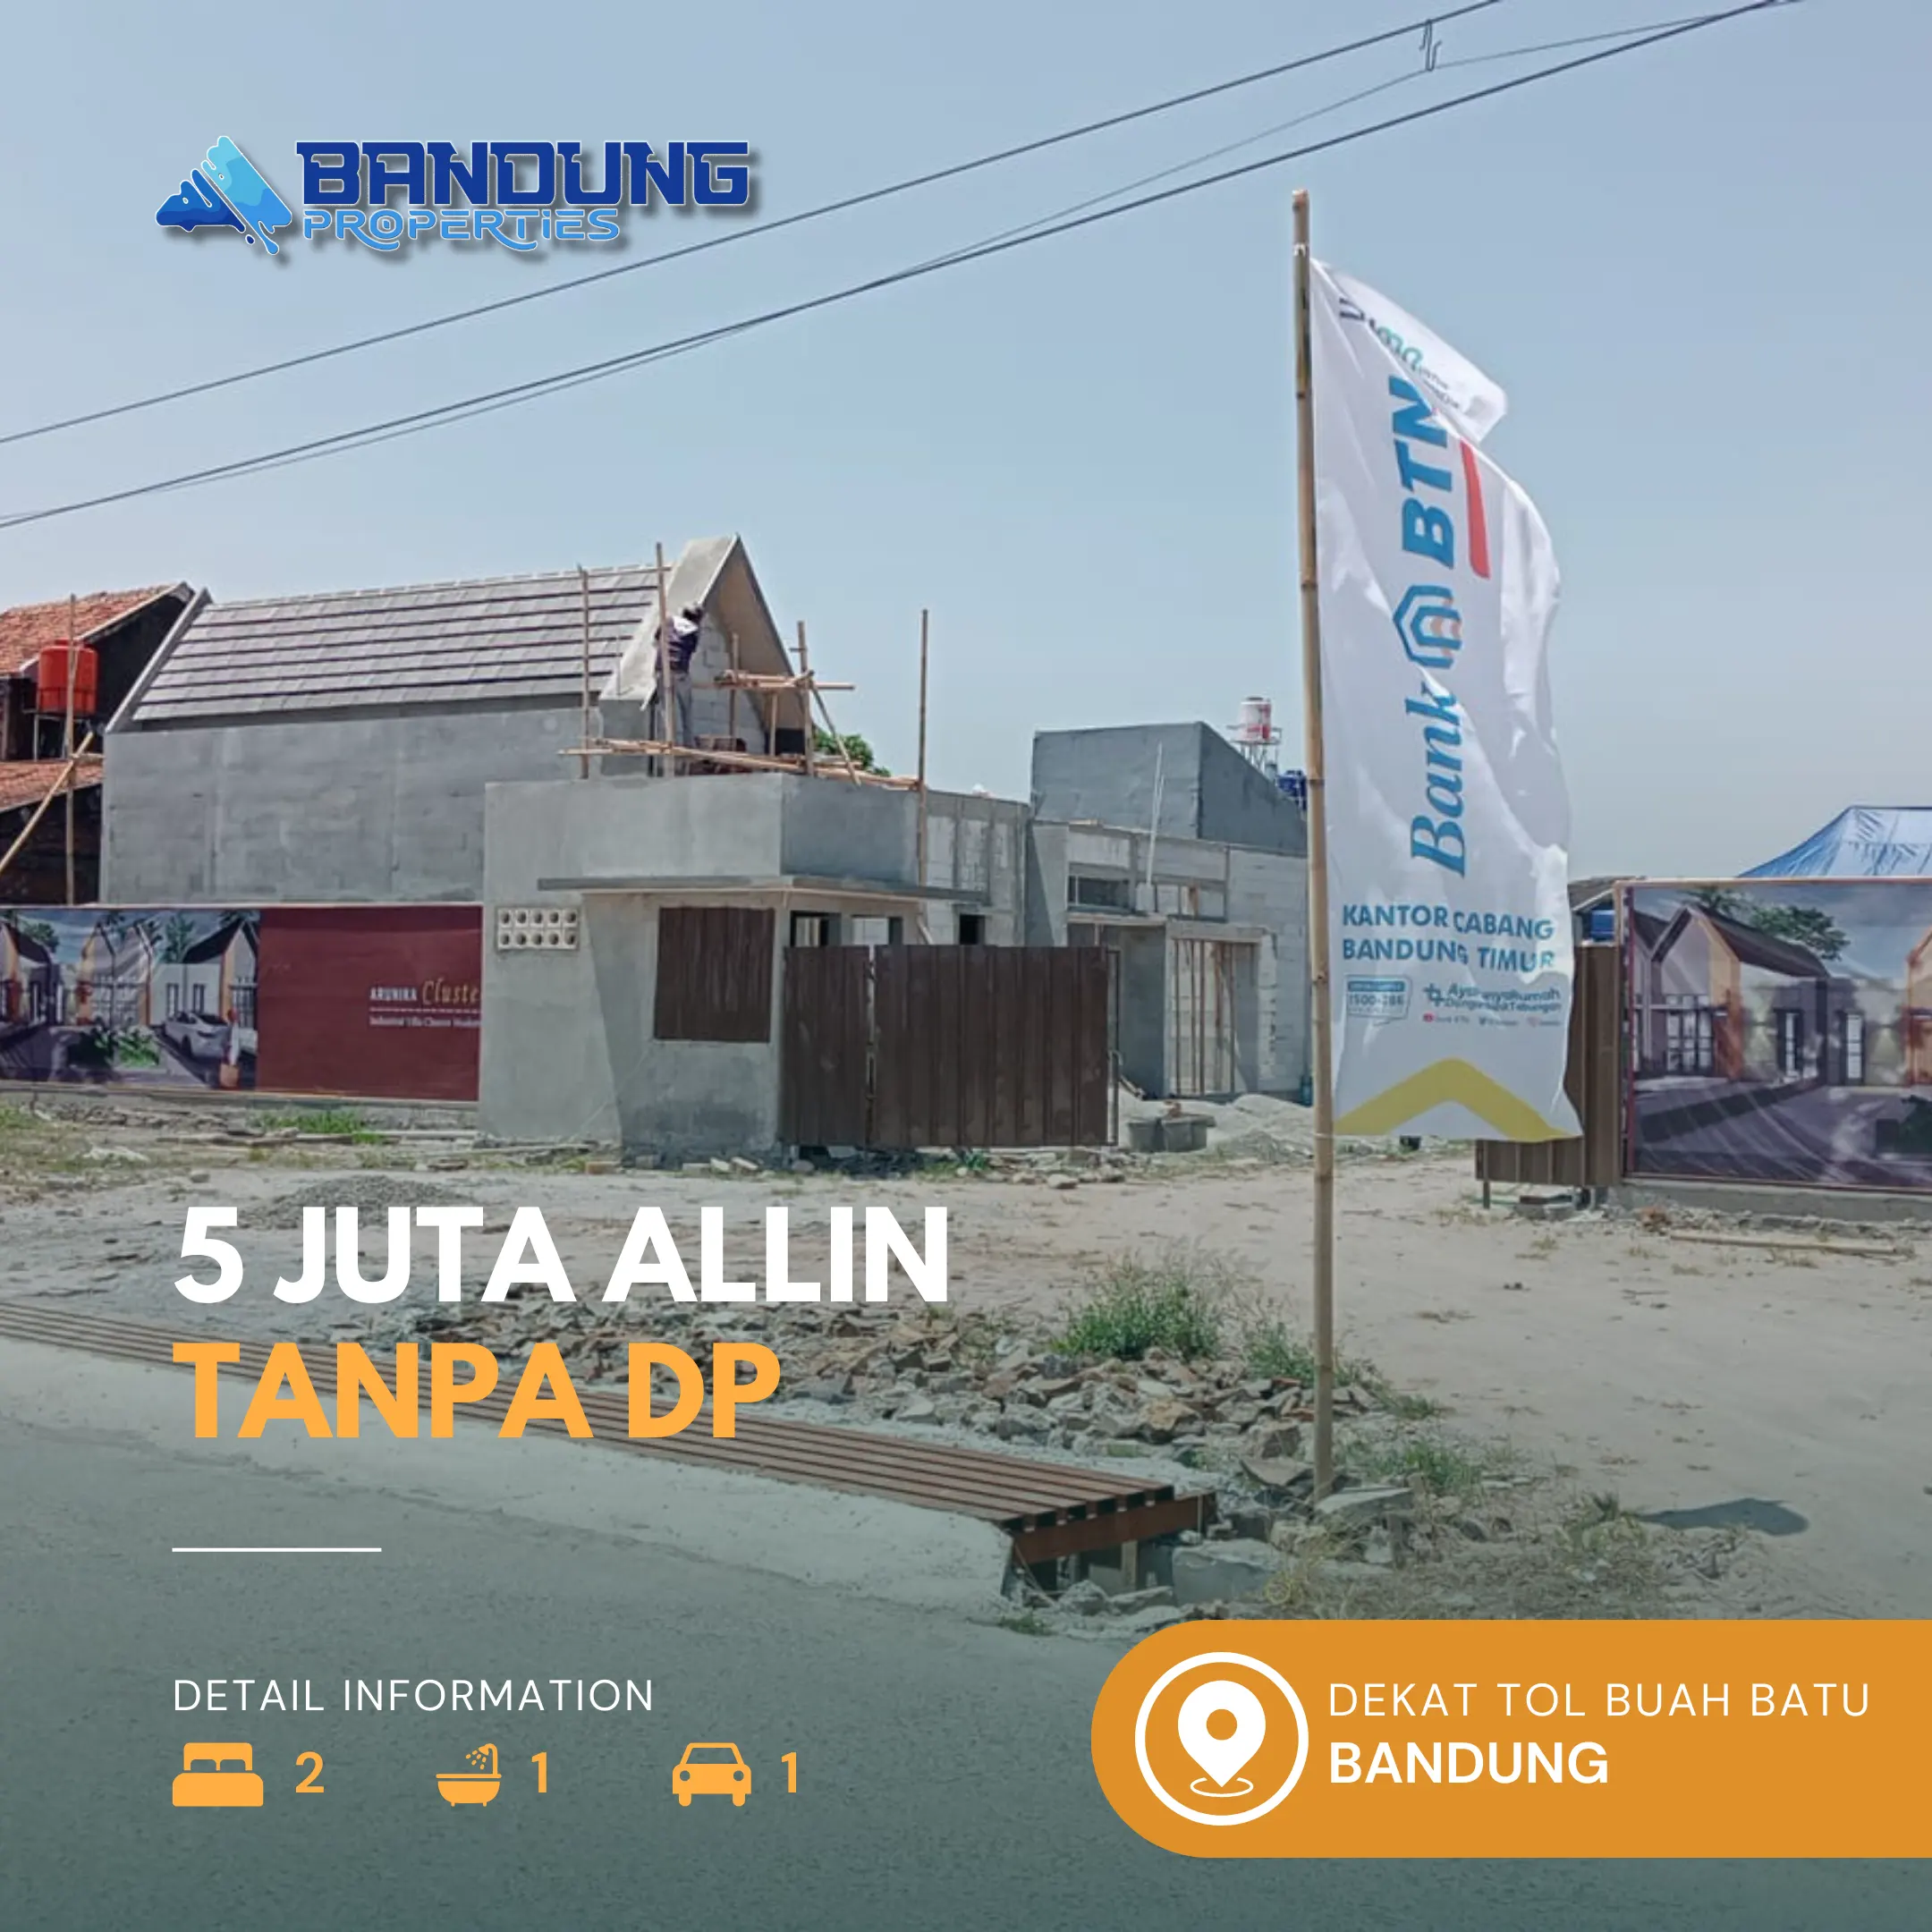 BTN Bandung Timur Cluster Arunika Ciganitri Beli Rumah Tanpa DP